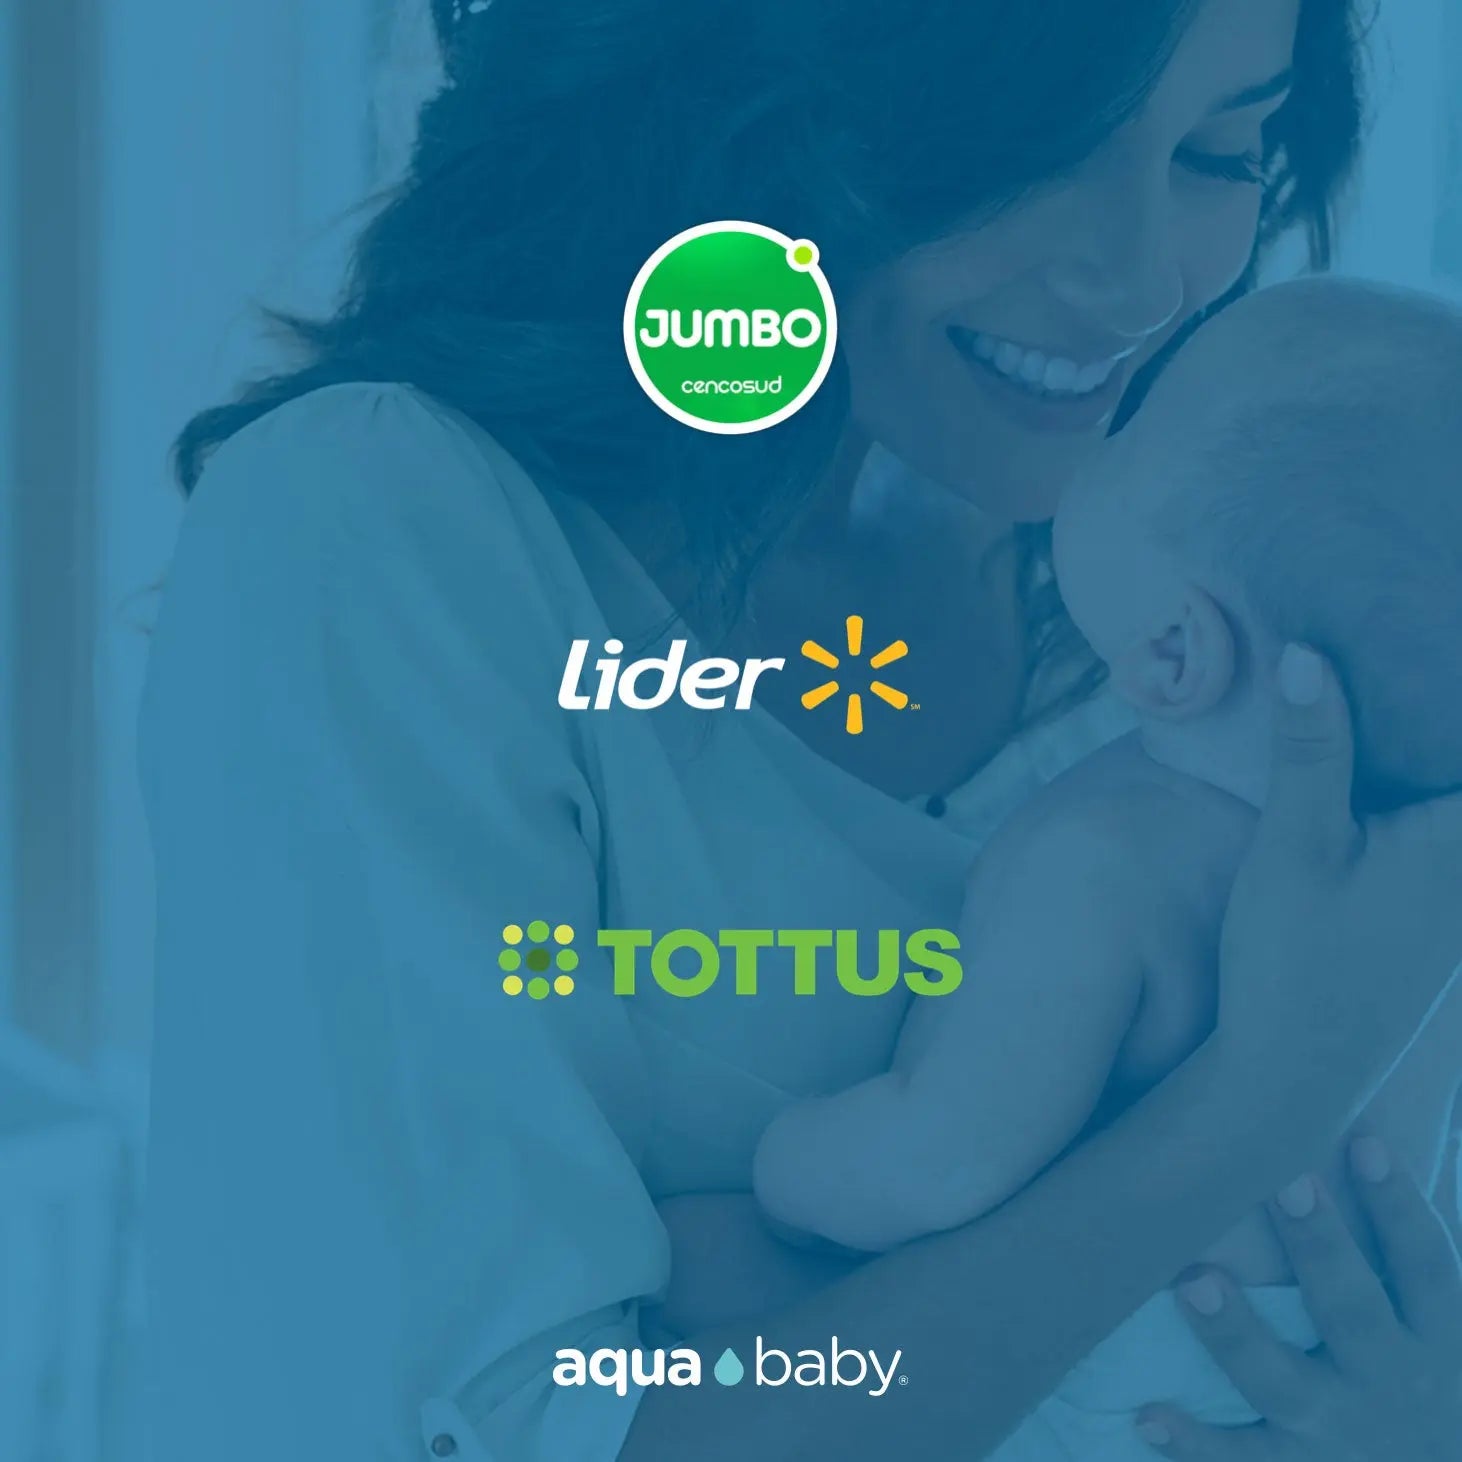 Aqua-Baby-ahora-en-todos-los-supermercados-Lider-Tottus-y-Jumbo-de-Chile Aqua Baby